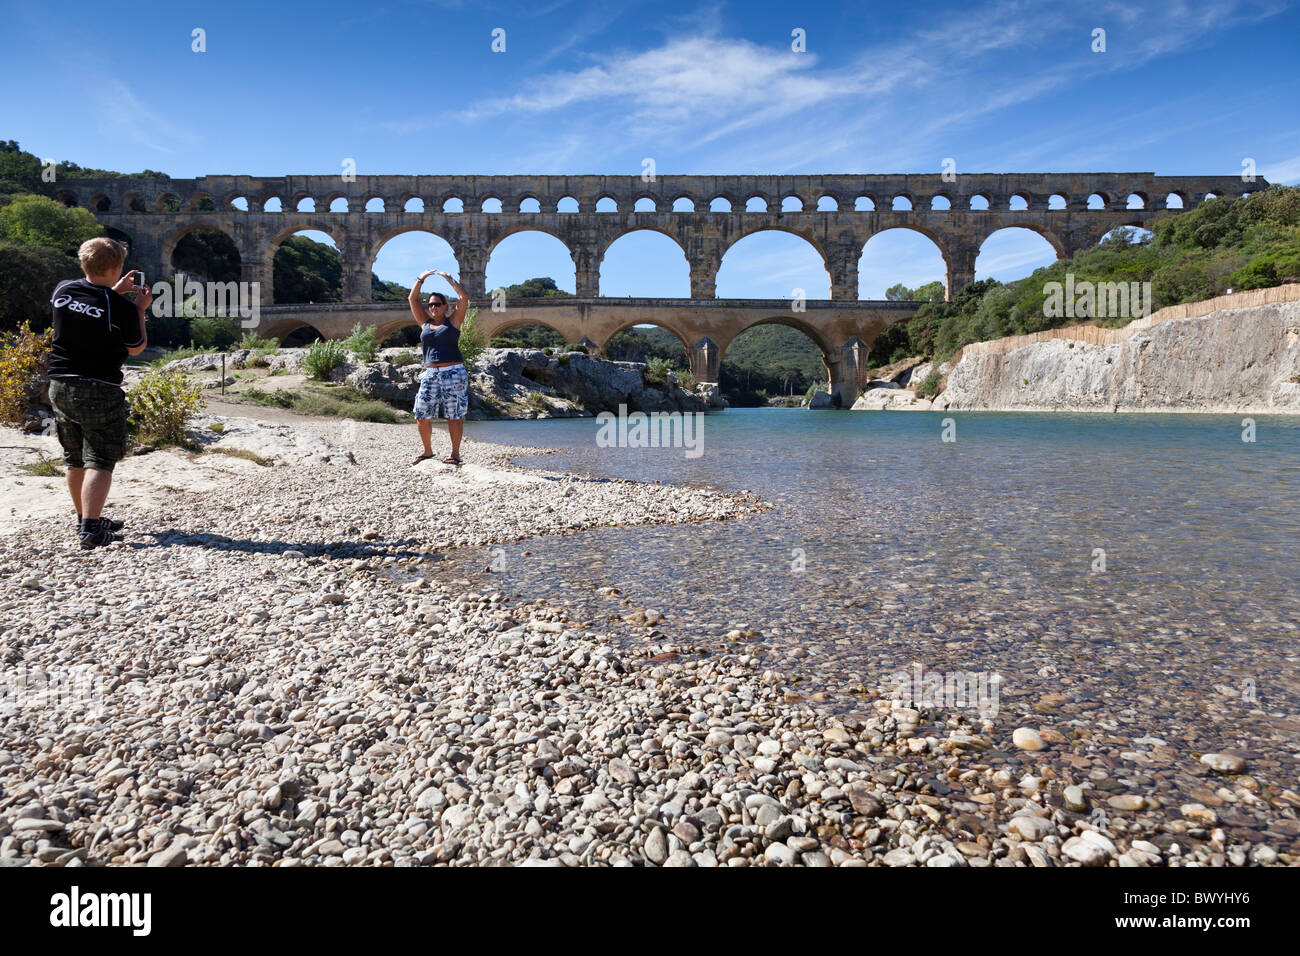 Un touristes posent devant le Pont du Gard, Gard, Languedoc-Roussillon, France. Banque D'Images